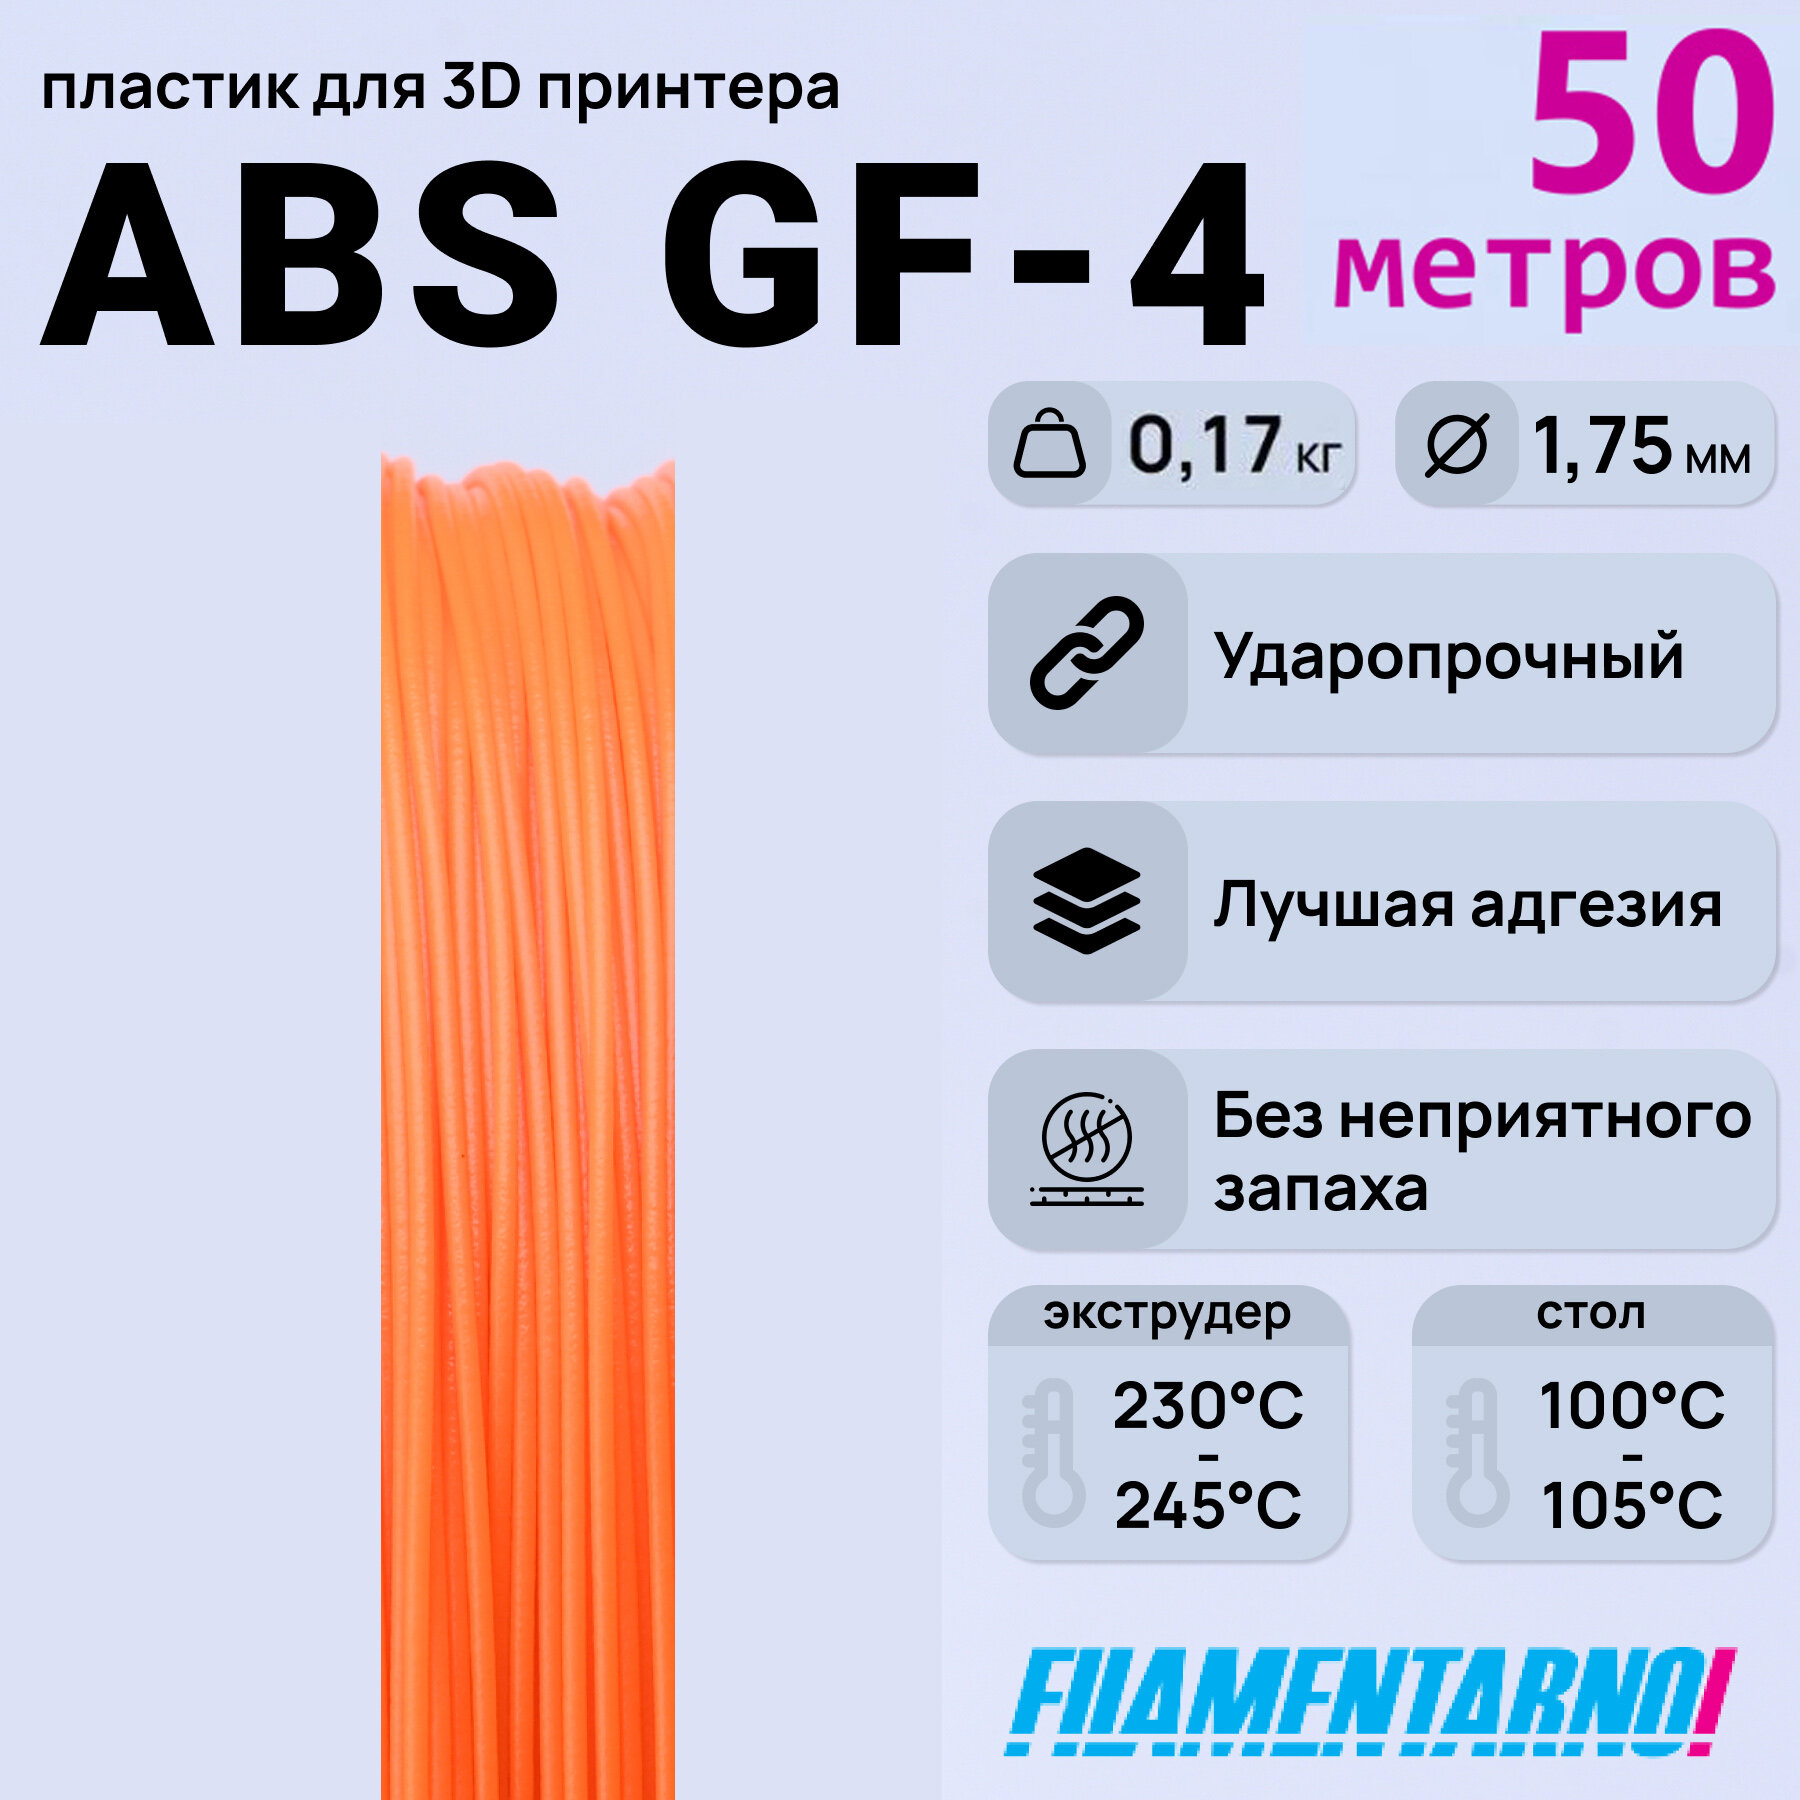 ABS GF-4   50 , 1,75 ,  Filamentarno  3D-